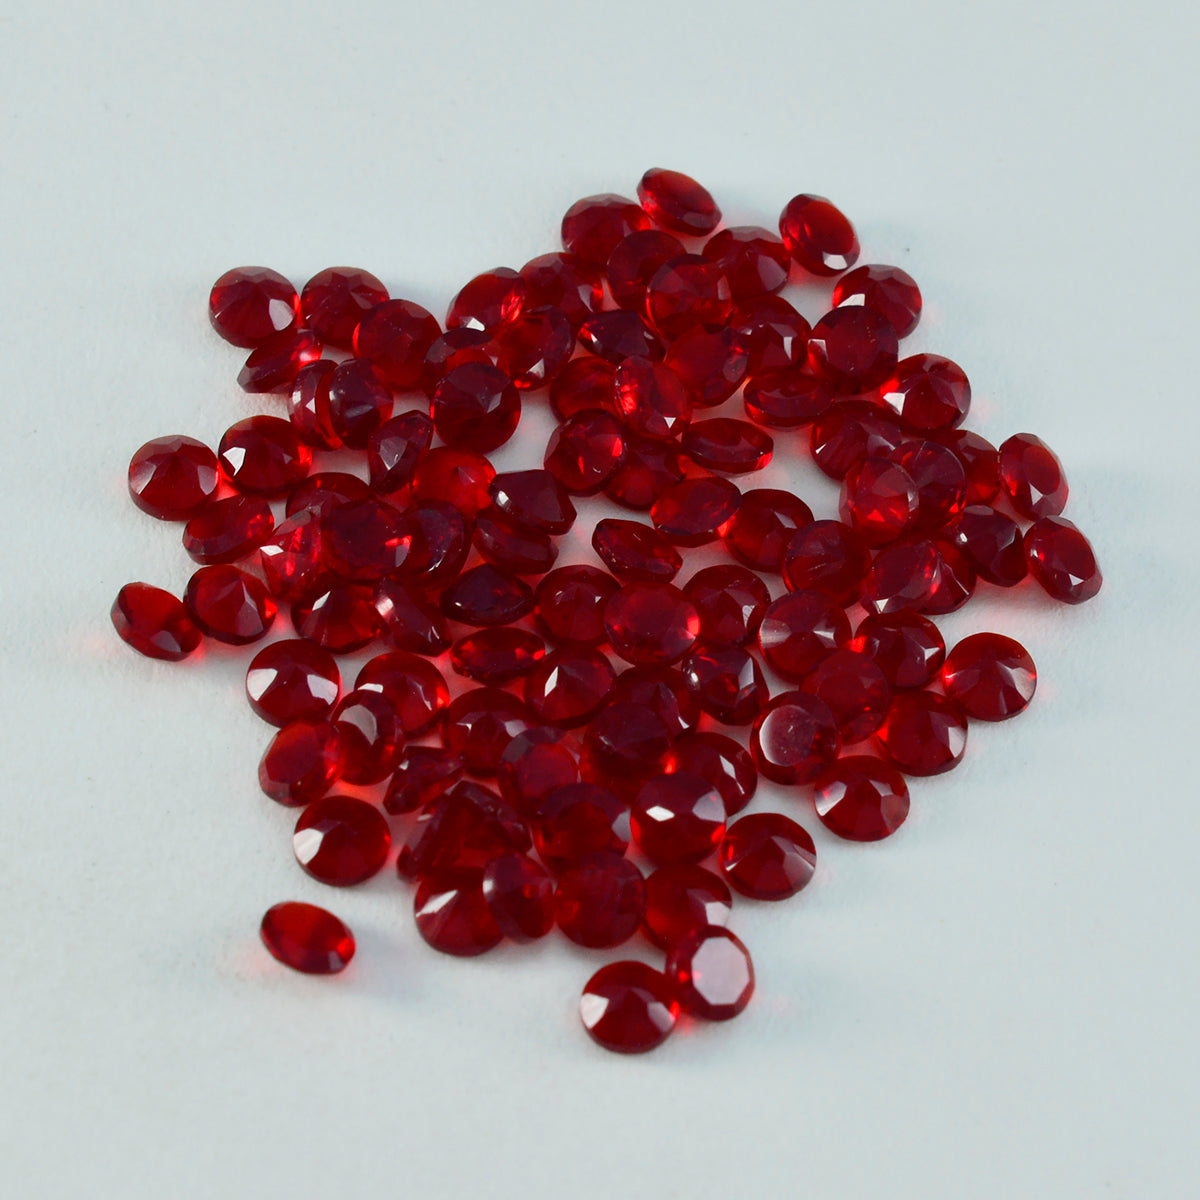 riyogems 1st röd rubin cz fasetterad 2x2 mm rund form aaa kvalitetspärla